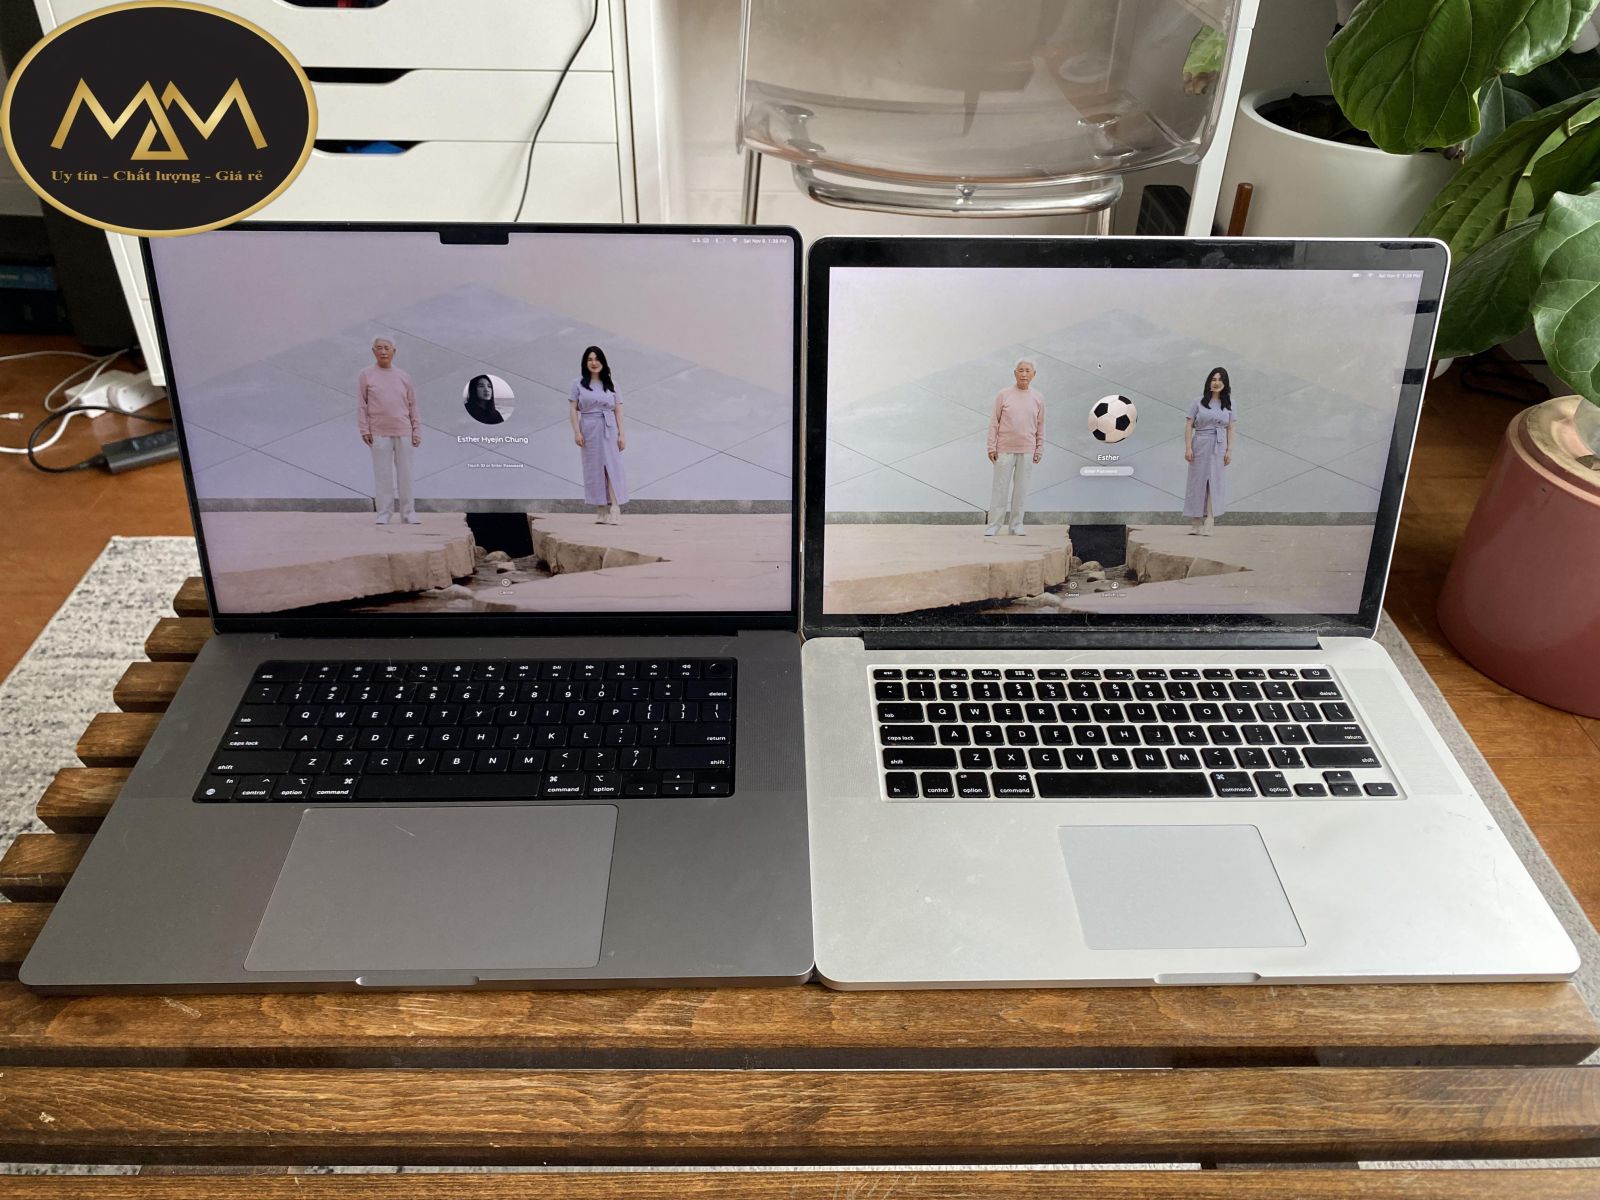 Vệ sinh bôi keo laptop giá rẻ quận Tân Bình